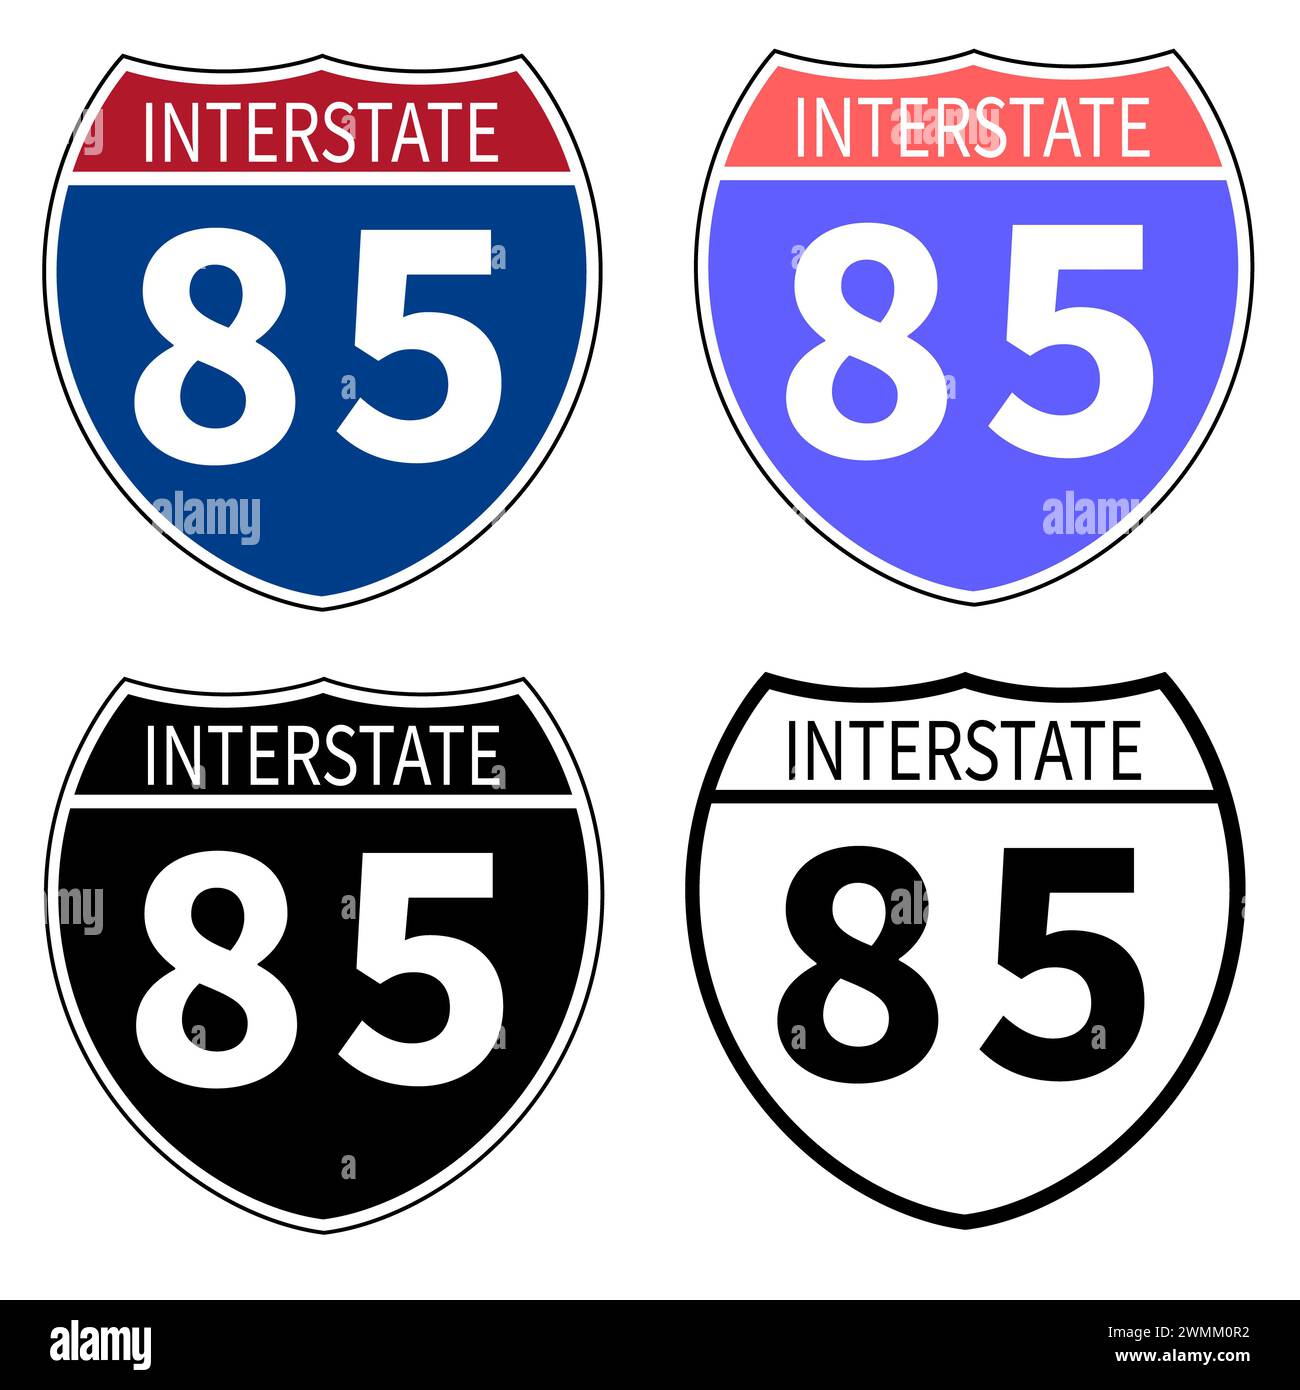 Icône de la route Interstate 85. Panneau routier de l'Interstate Highway 85. Symbole routier noir de l'Interstate 85. style plat. Banque D'Images